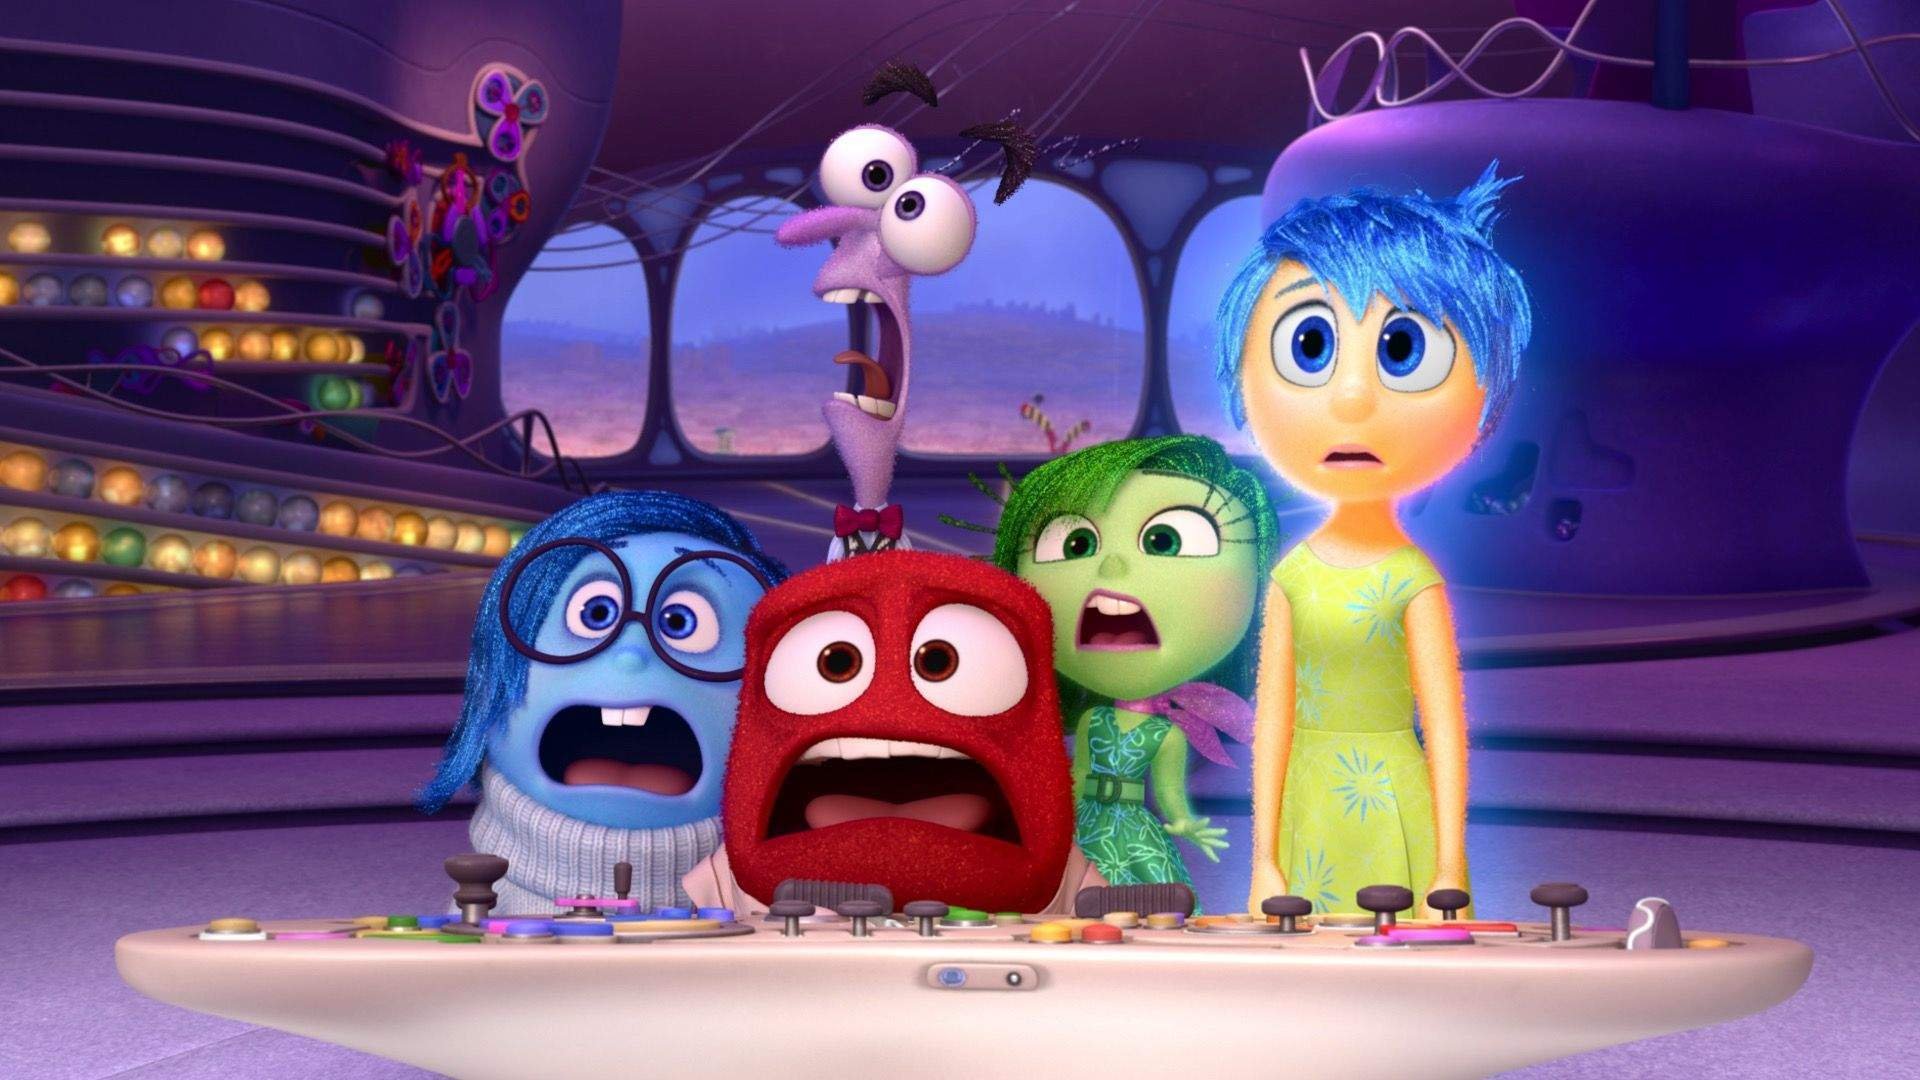 ความโศกเศร้า ความโกรธ ความขยะแขยง และความสุขใน Disney Pixar's Inside Out